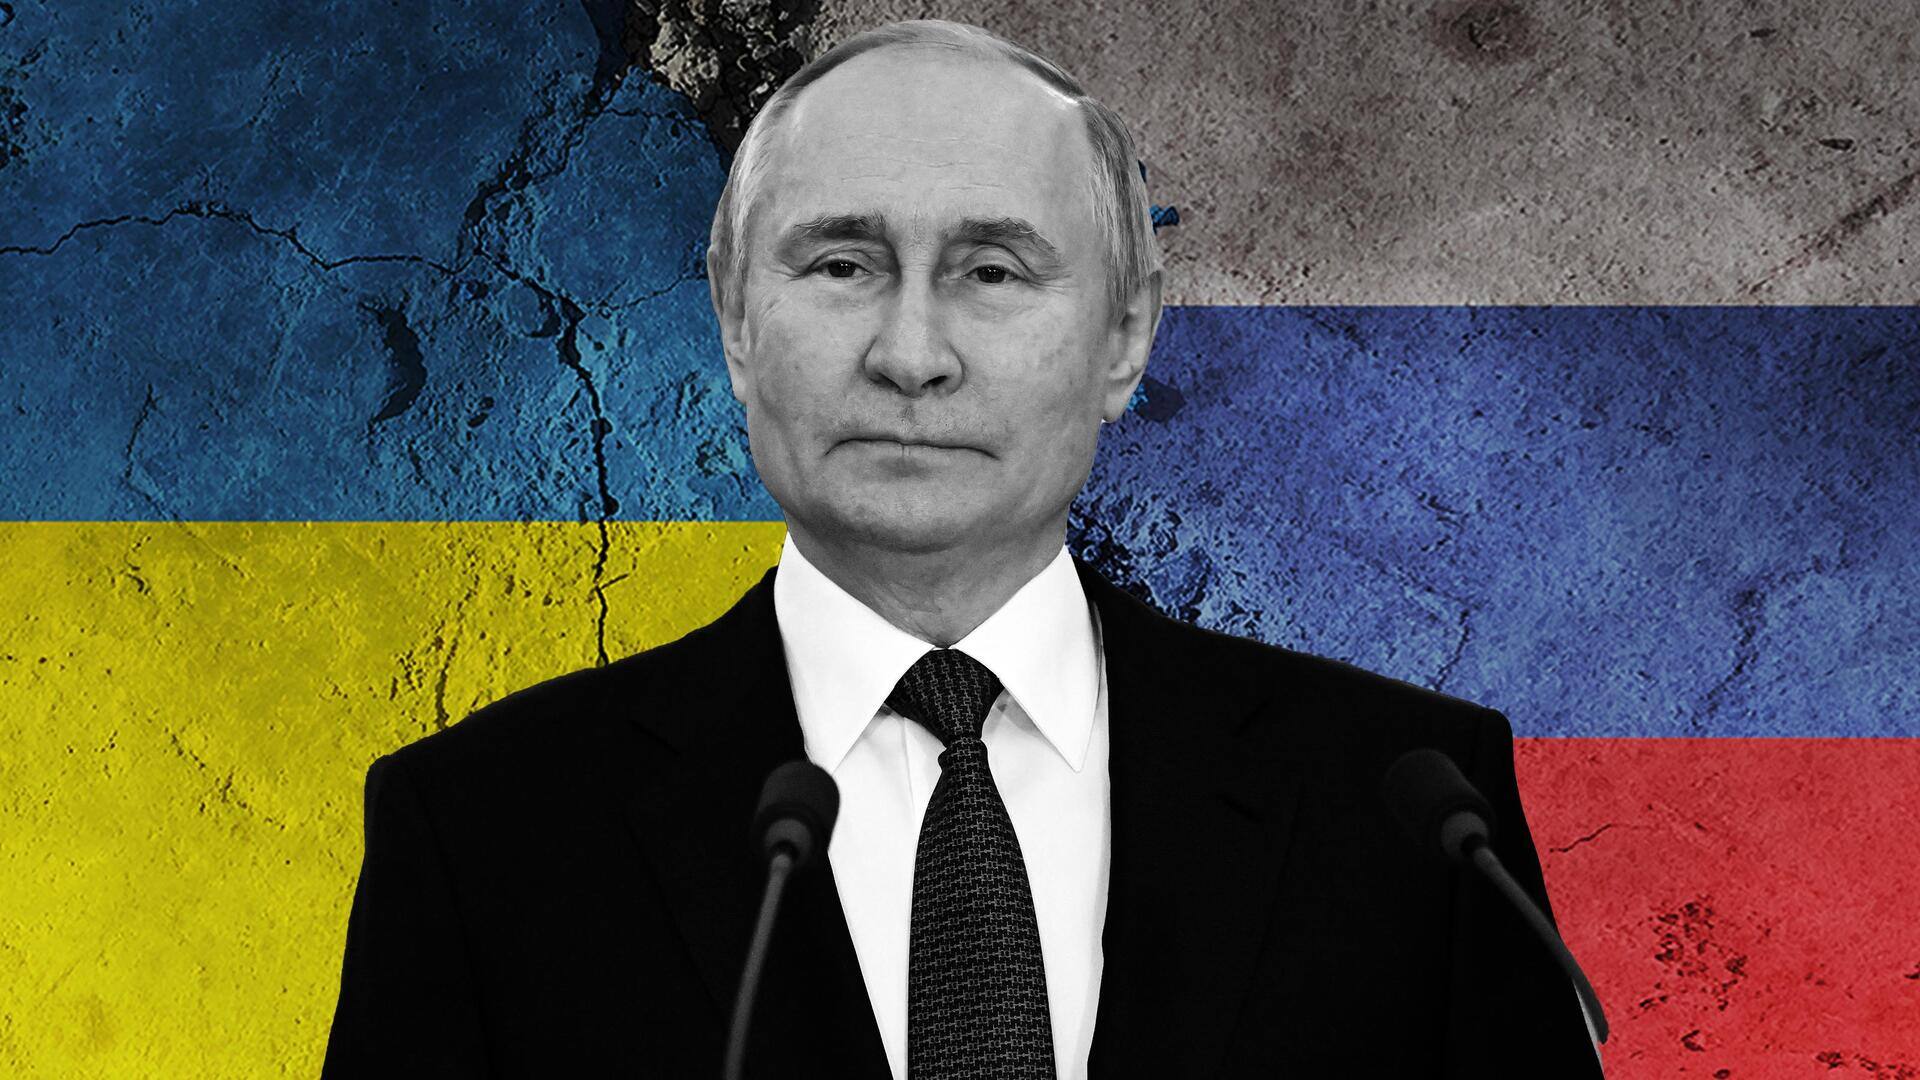 रूसी राष्ट्रपति व्लादिमीर पुतिन का दावा- यूक्रेन ने किया था शांति समझौता, बाद में मुकर गया